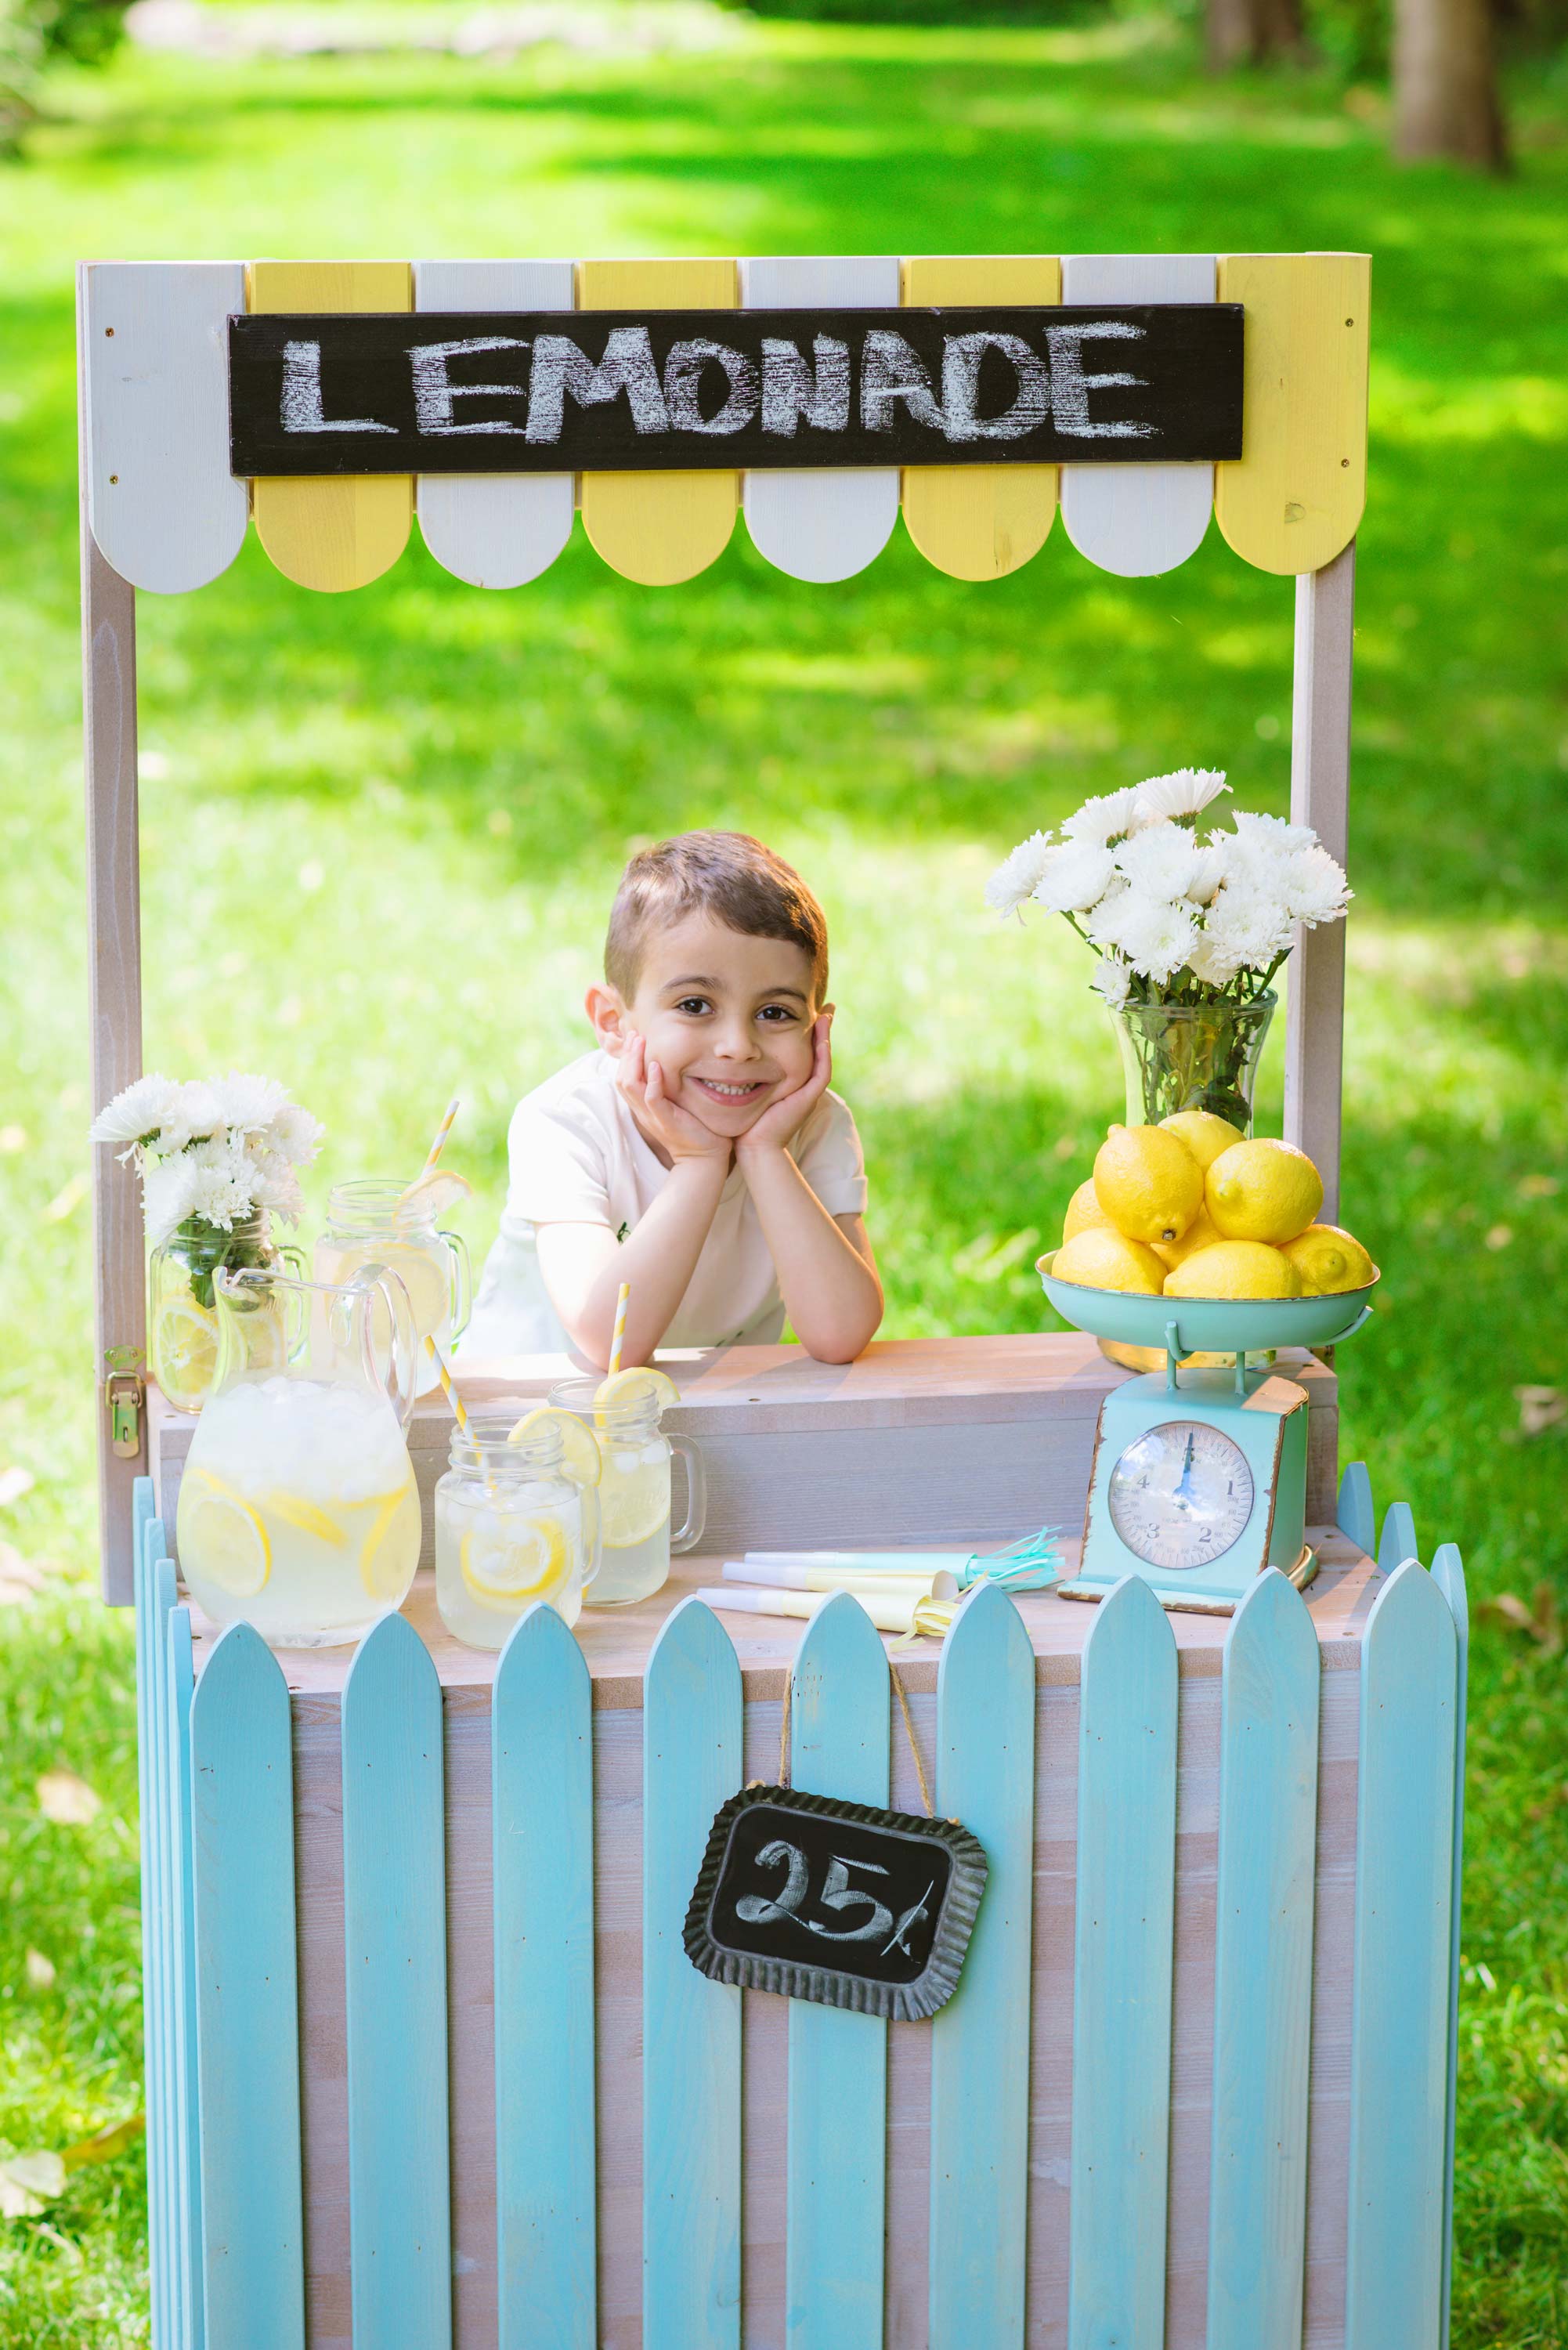 Lemonade stand photos